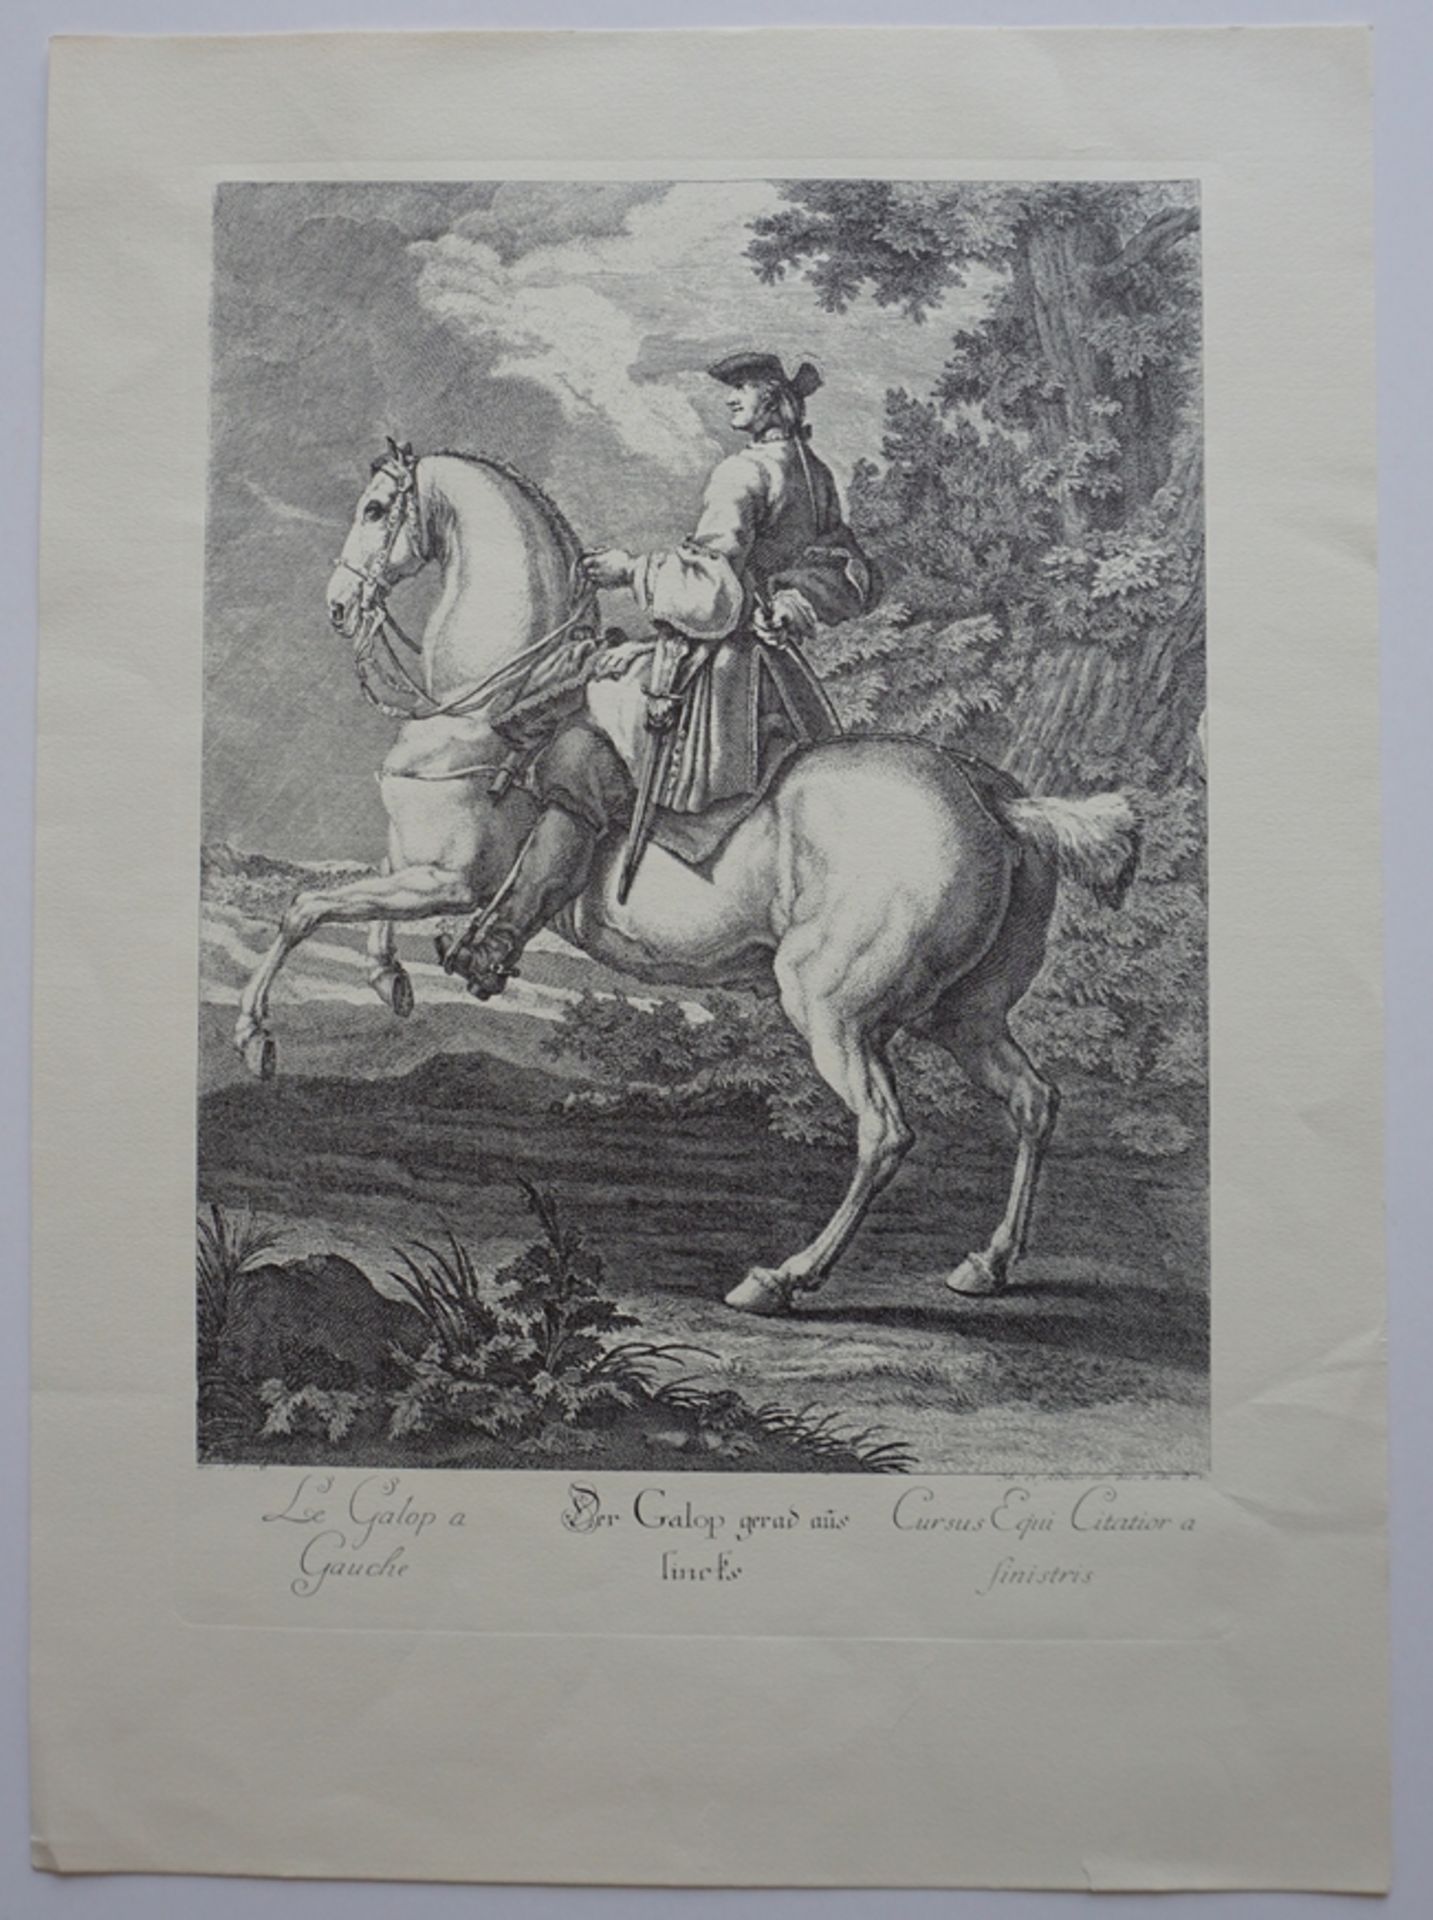 Johann Elias Ridinger (1685-1767), "Der Galop nach links", Kupferstich